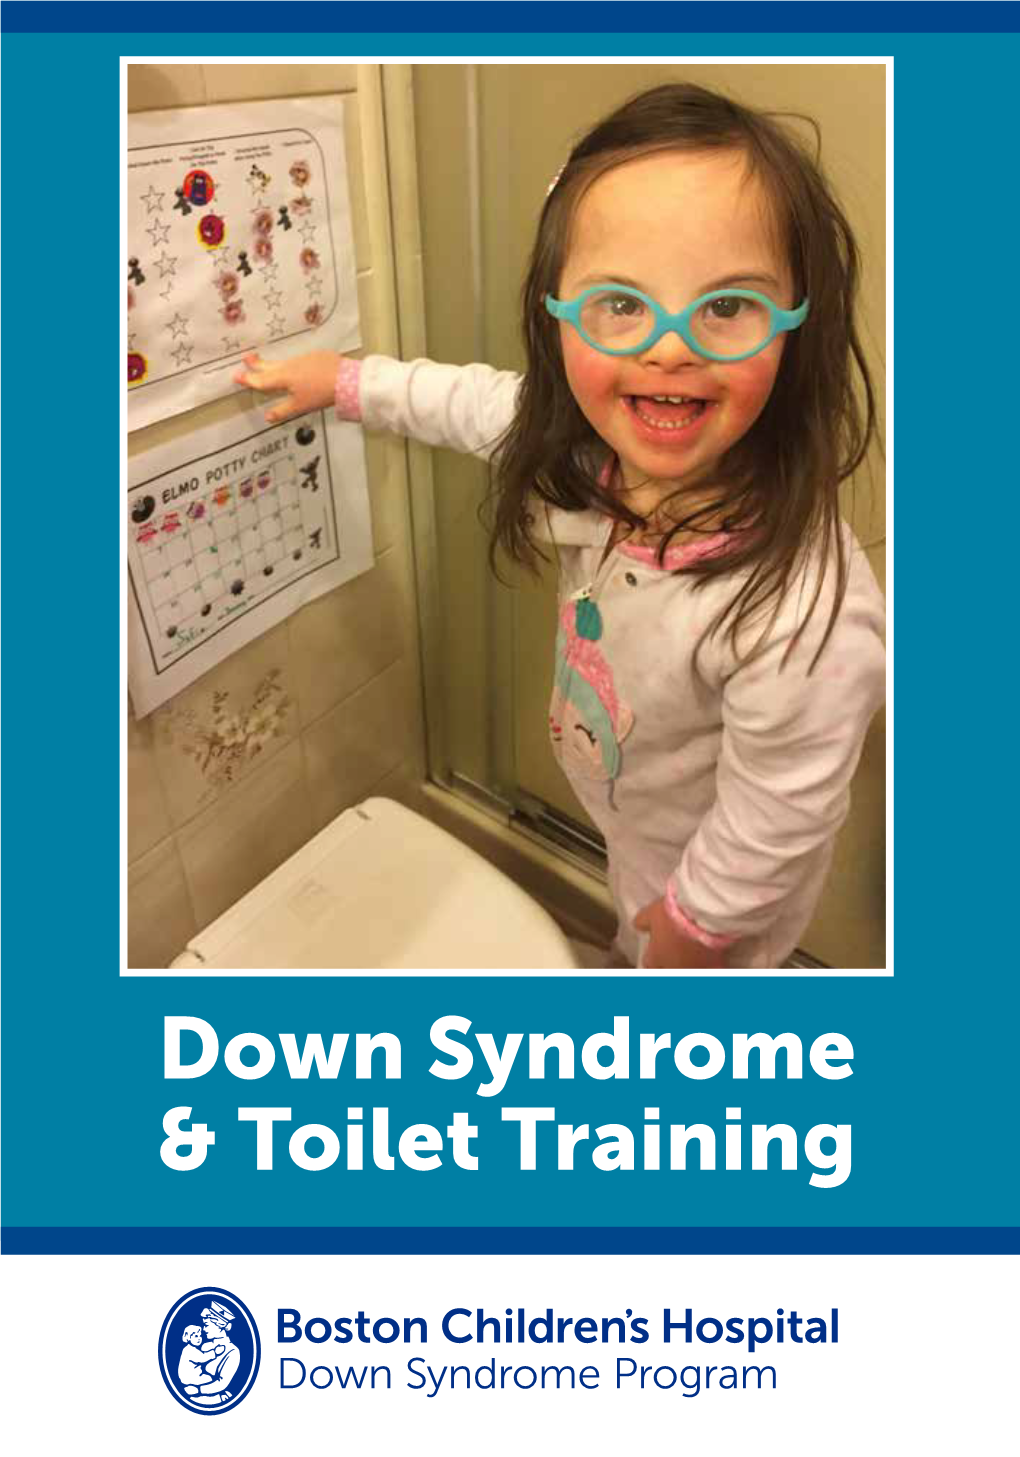 Down Syndrome & Toilet Training